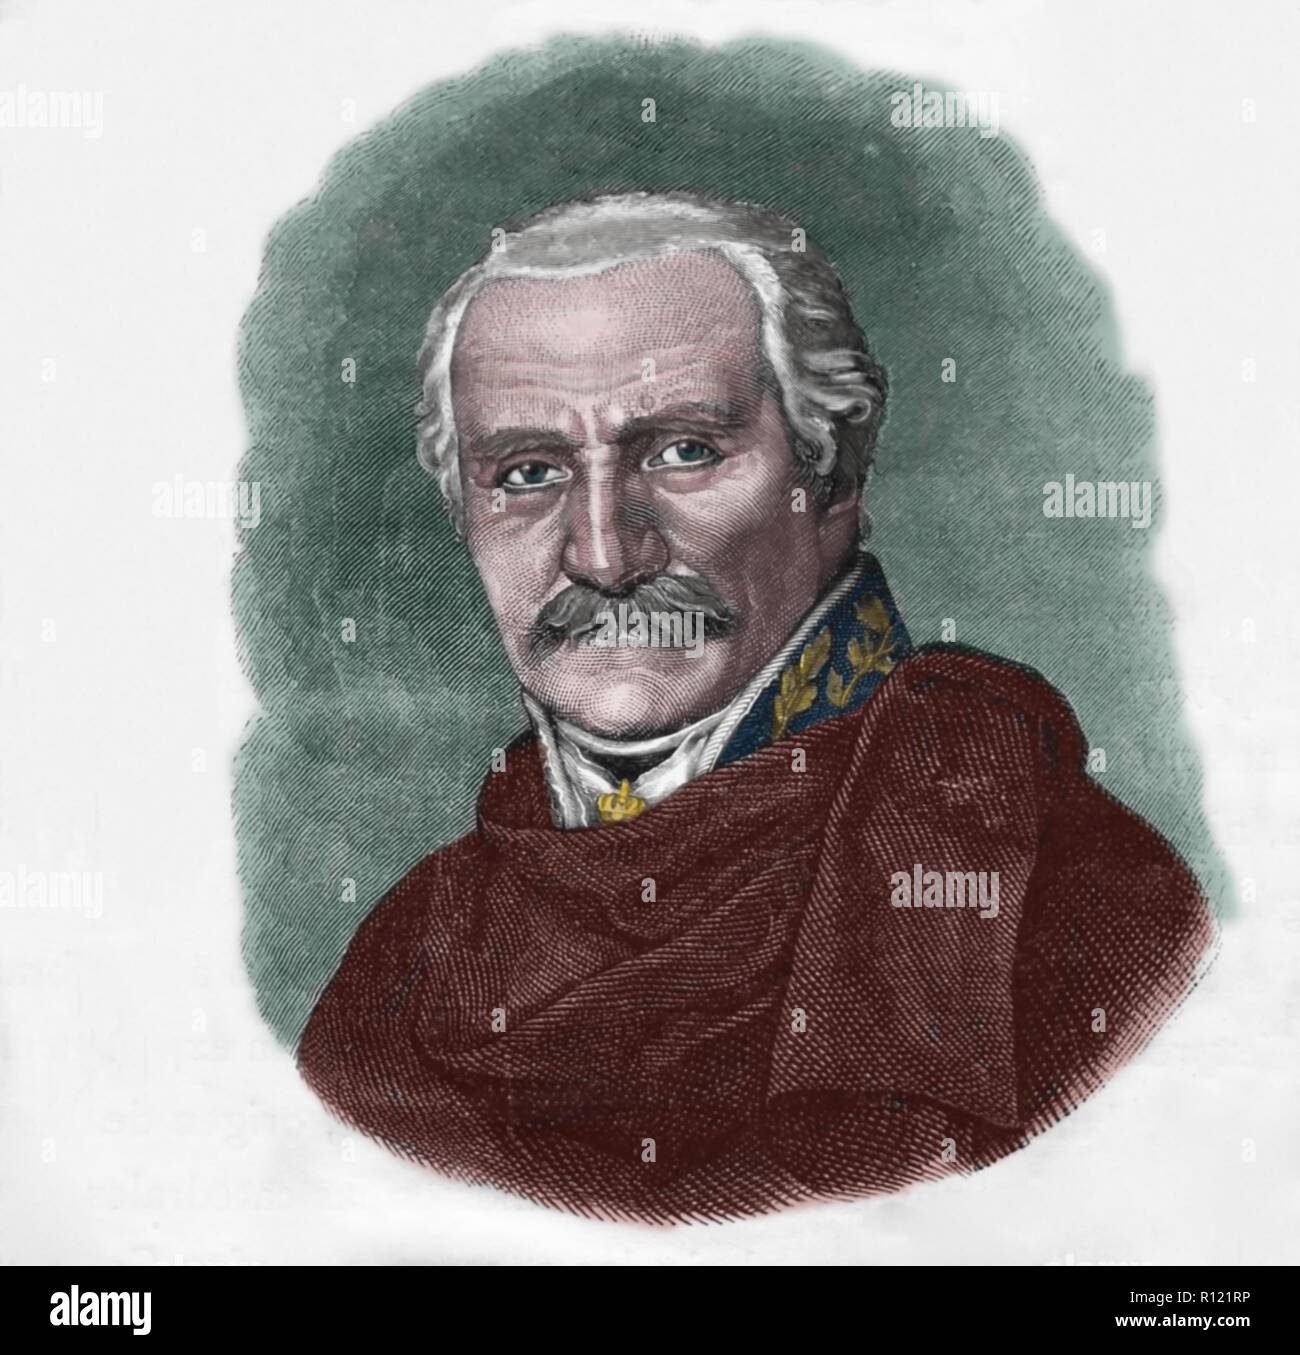 Gebhard Leberecht von Blucher (1742-1819). Prussian field marshal. Engraving of Germania, 1882. Stock Photo